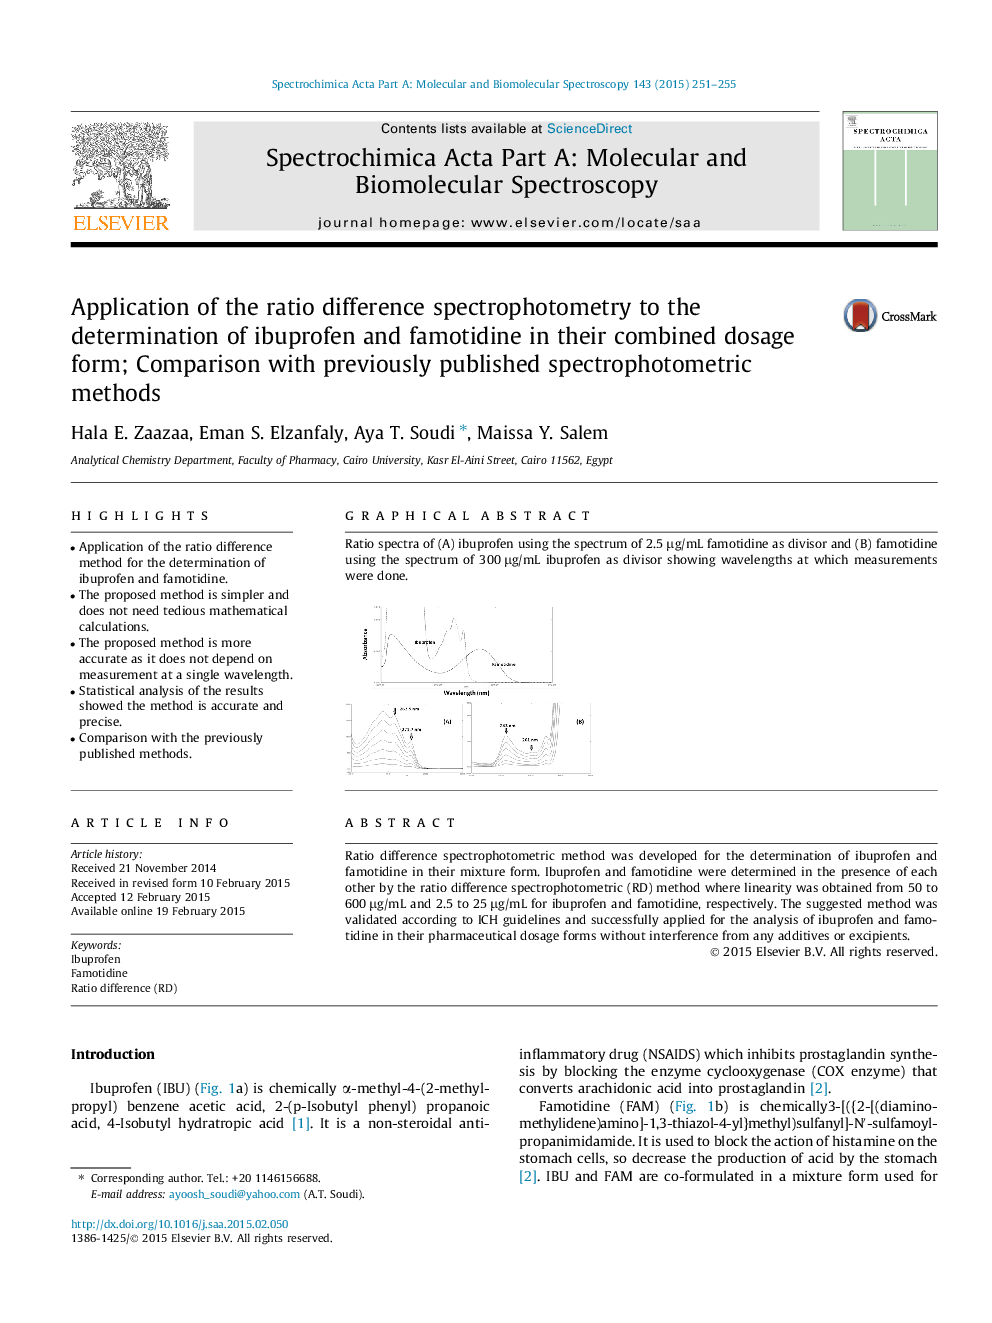 استفاده از اسپکتروفتومتر اختلاف نسبت به تعیین ایبوپروفن و فاموتییدین در فرم دوز ترکیبی آنها؛ مقایسه با روش های اسپکتروفتومتری که قبلا منتشر شده است 